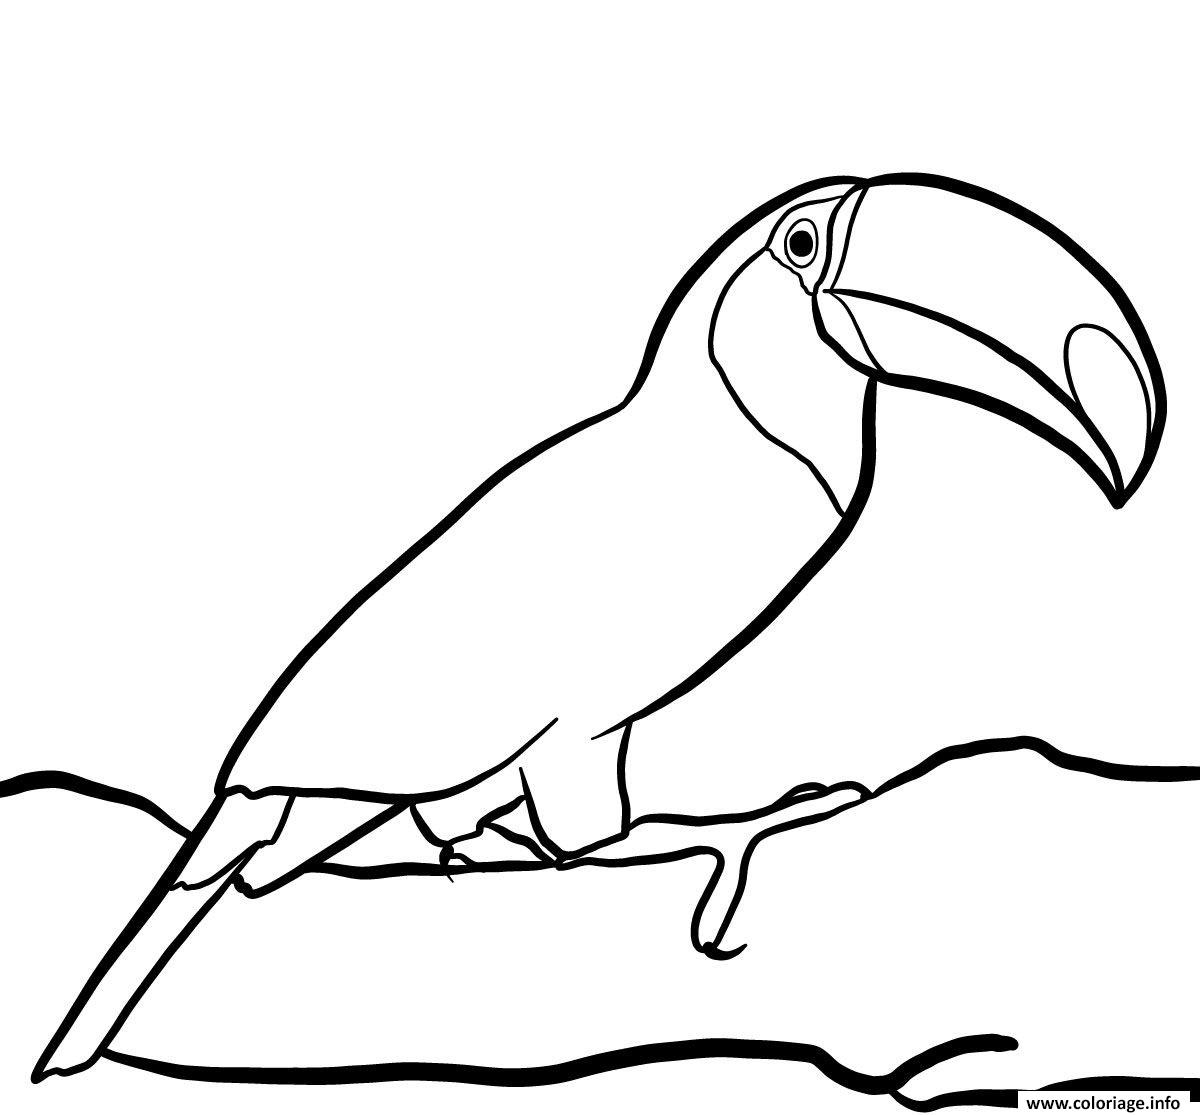 Coloriage Oiseau Toucan Toco Vit Dans La Foret Tropicale Dessin Oiseau destiné Oiseau À Imprimer 